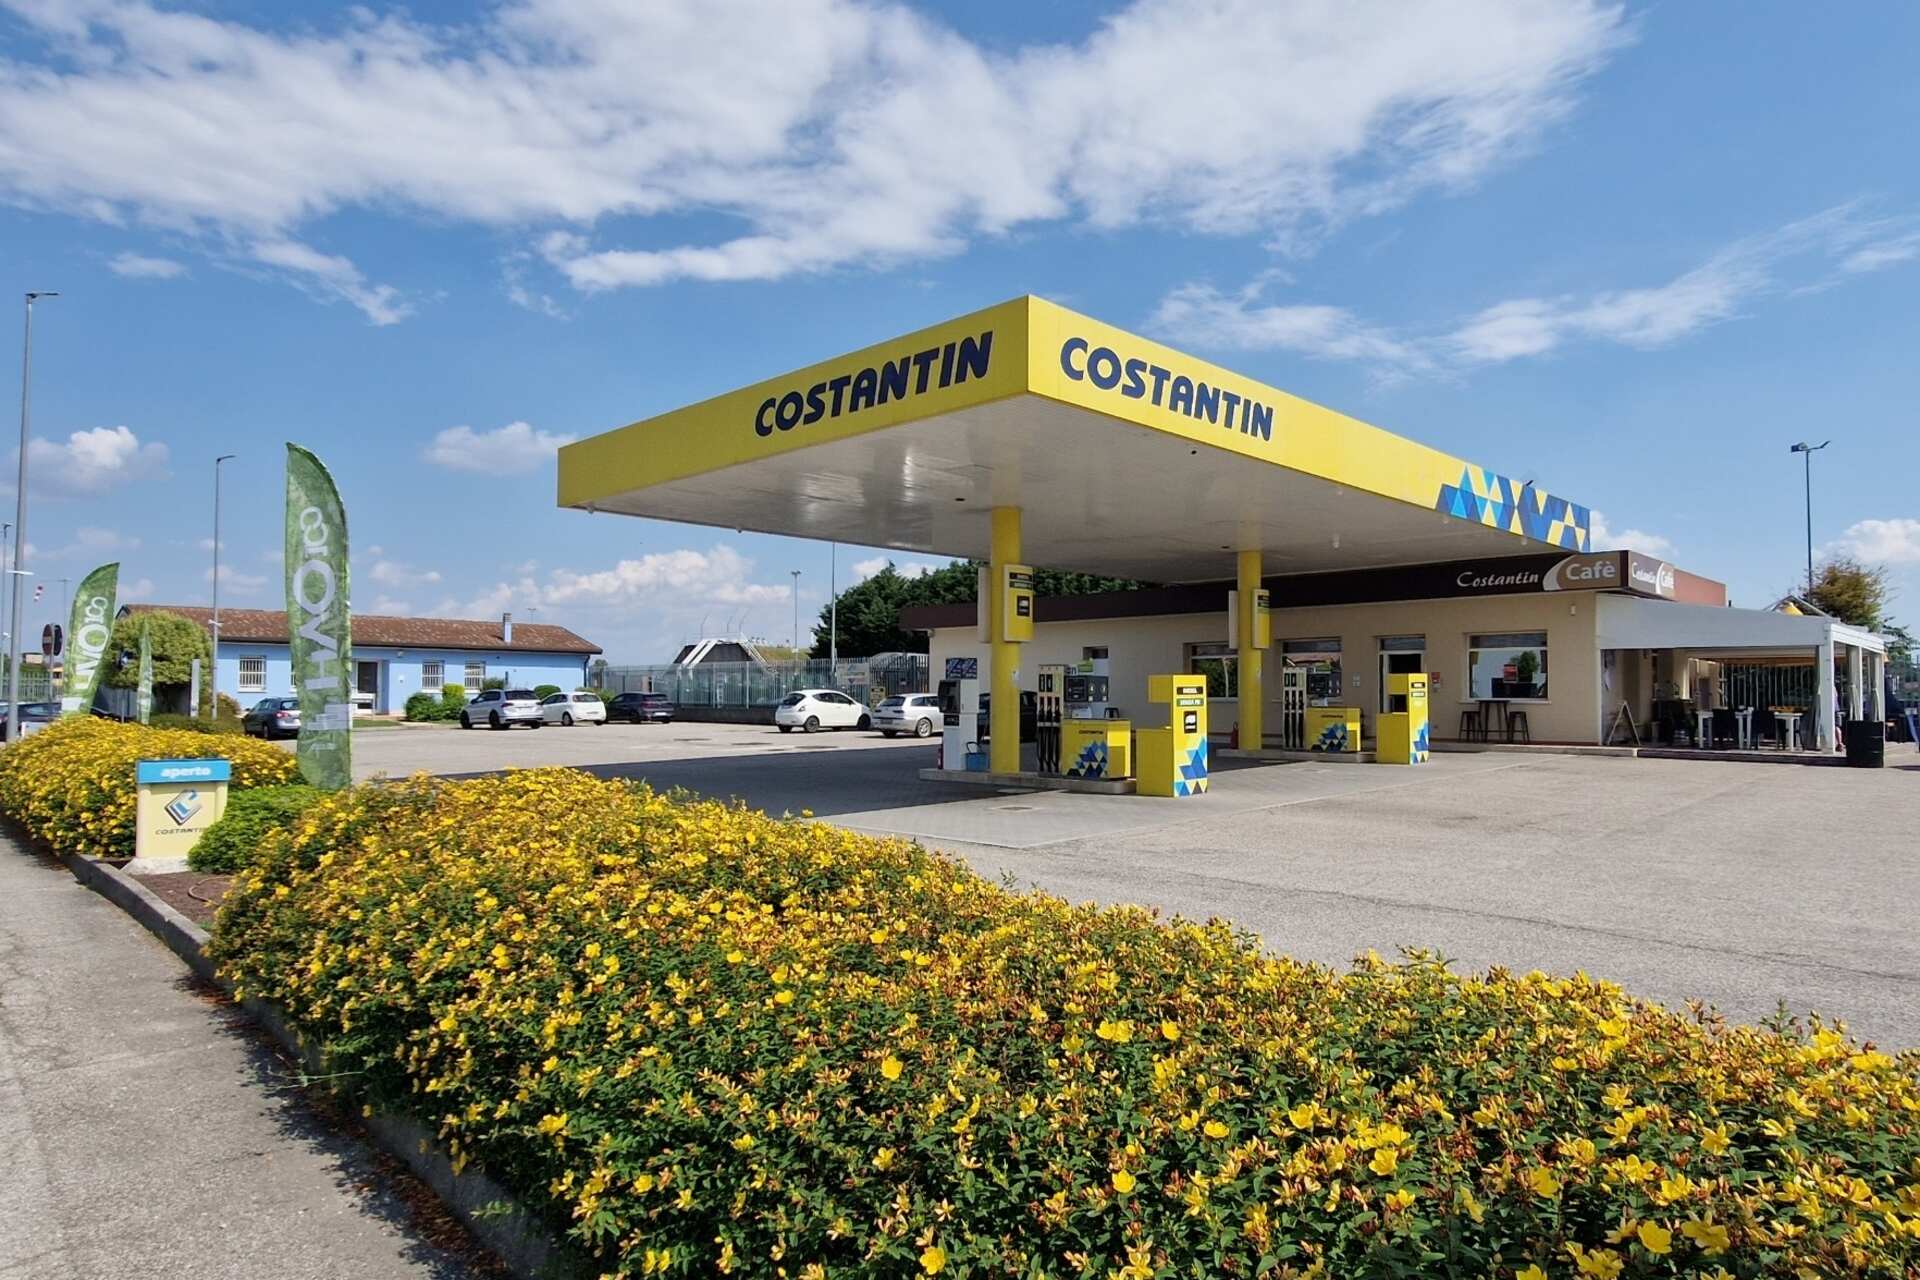 Biodiesel : la station-service Costantin à Merlara, dans la province de Padoue, vend exclusivement du HVO100 ou huile végétale hydrogénée